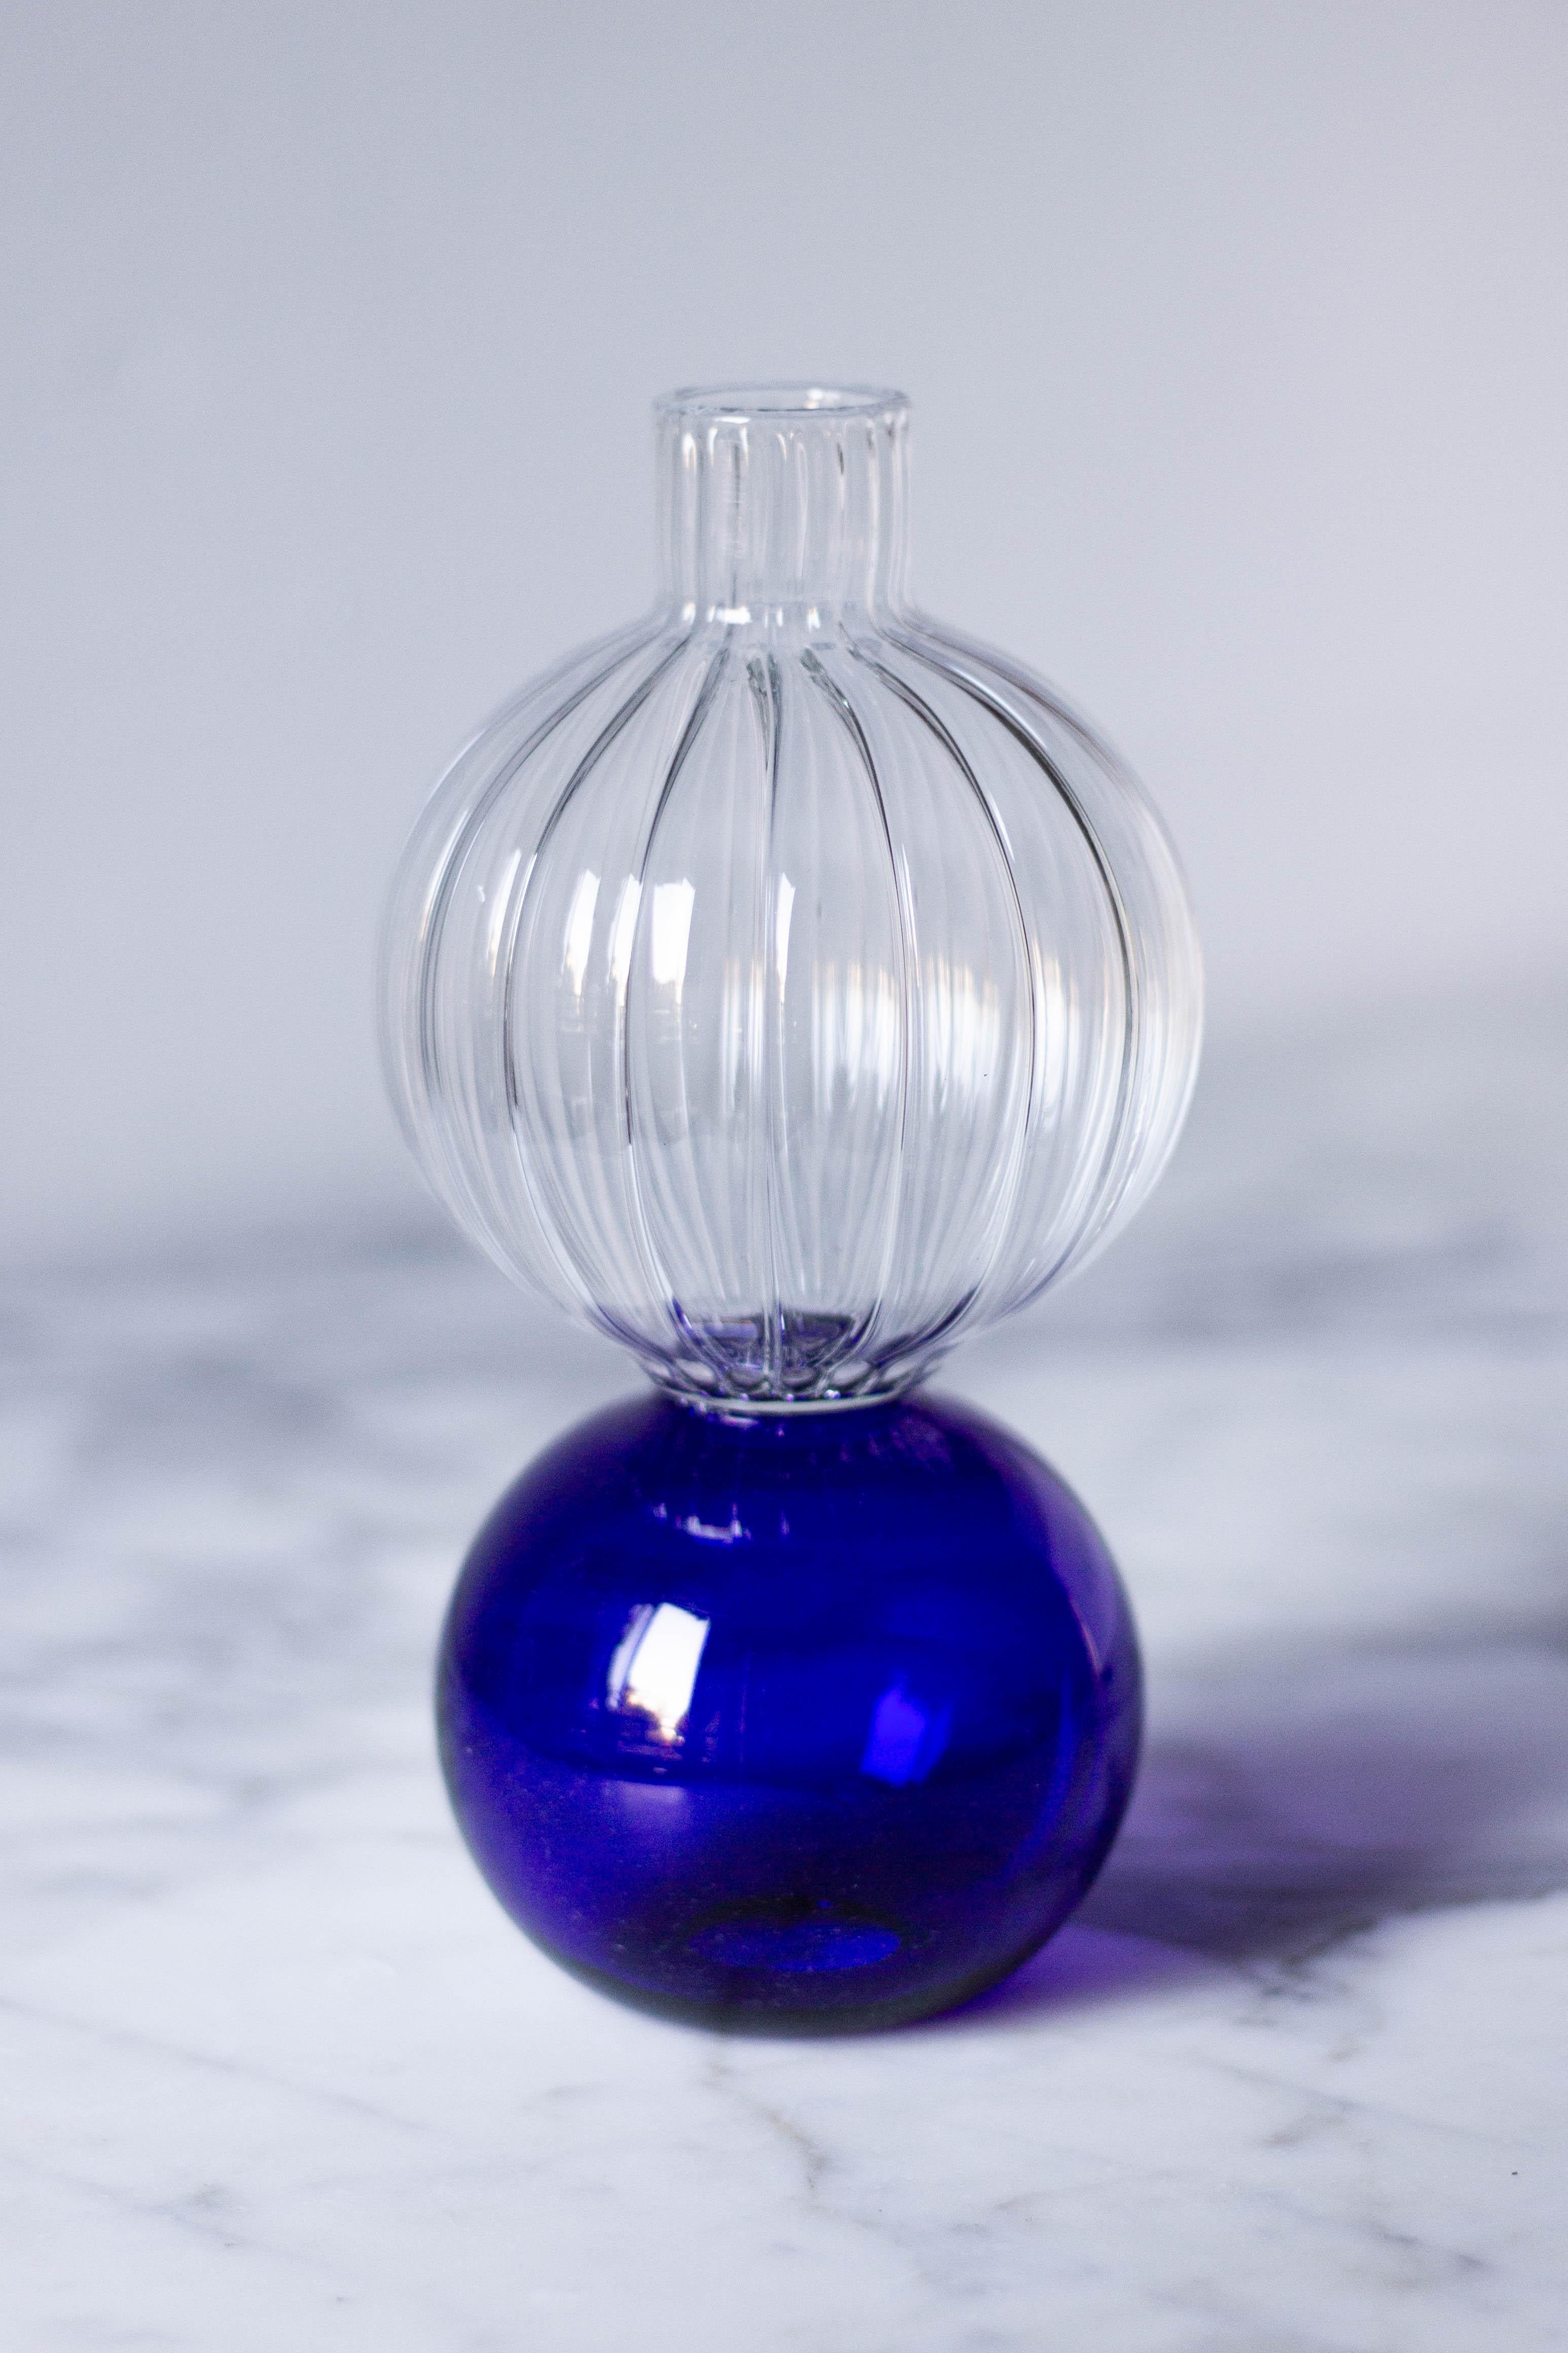 Dieser handgefertigte Wasserbehälter ist ein exquisites Stück aus der Wonder Crystal Collection und besticht durch die Verschmelzung von klaren und blauen Farbtönen. Der kunstvoll geblasene Kristall verfügt über einen kugelförmigen Sockel, der